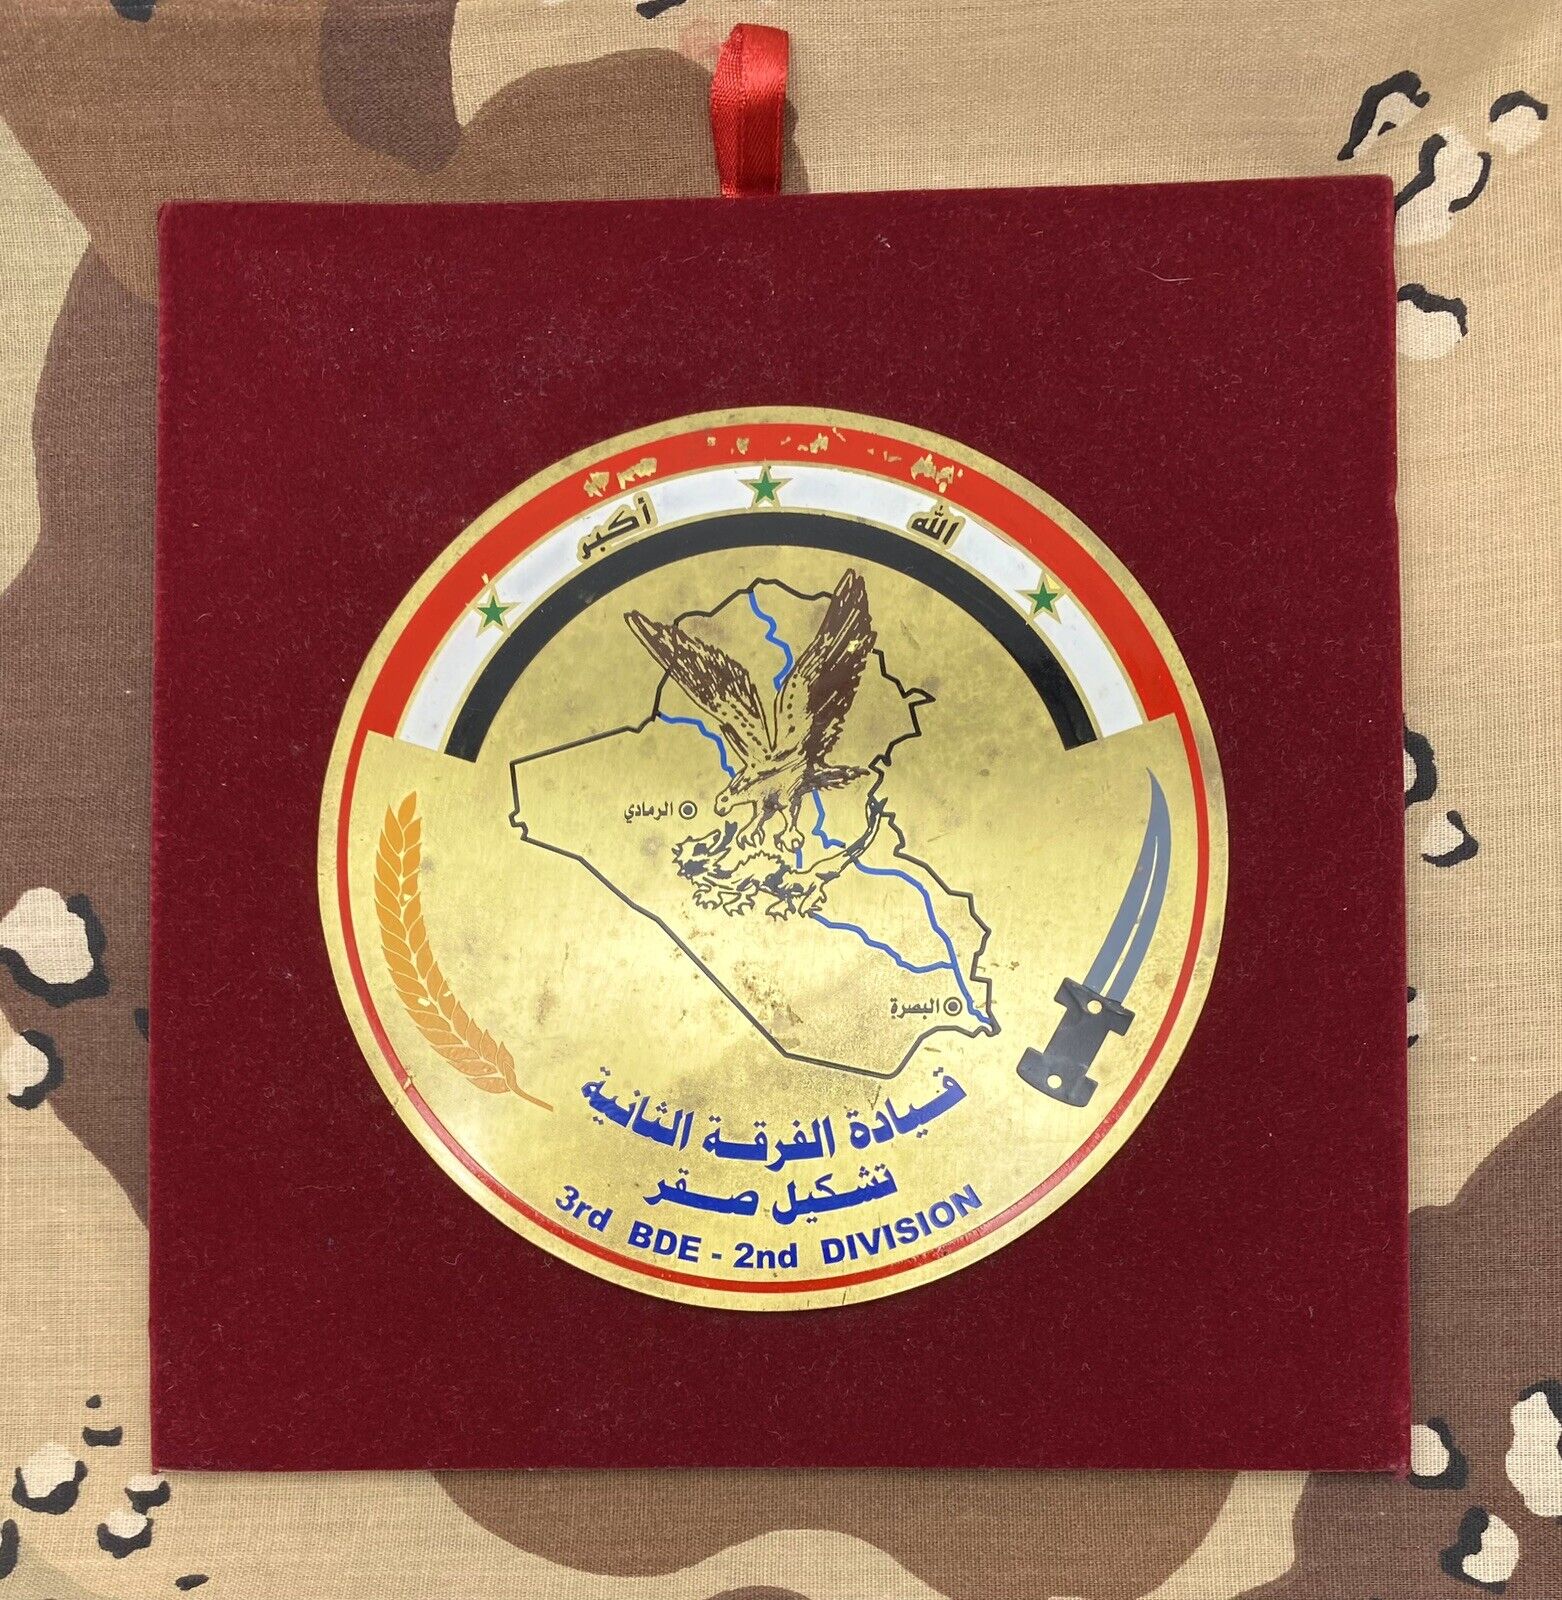 Rare Original Post-2003 Iraqi Army 2nd Division, 3rd Brigade Table Medal Award